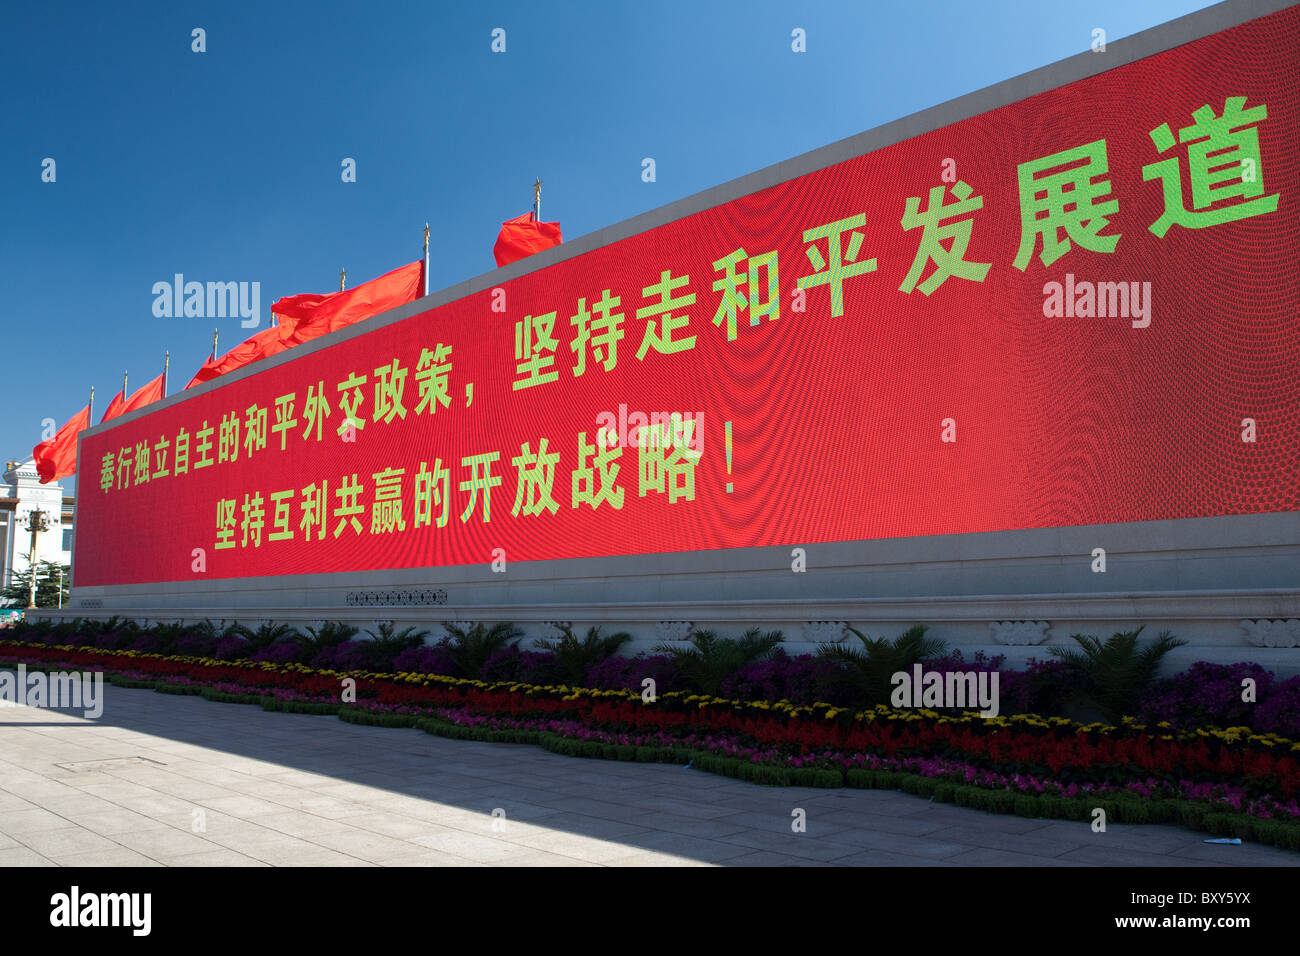 Chinese Slogan, Tiananmen Square, Beijing, China Stock Photo